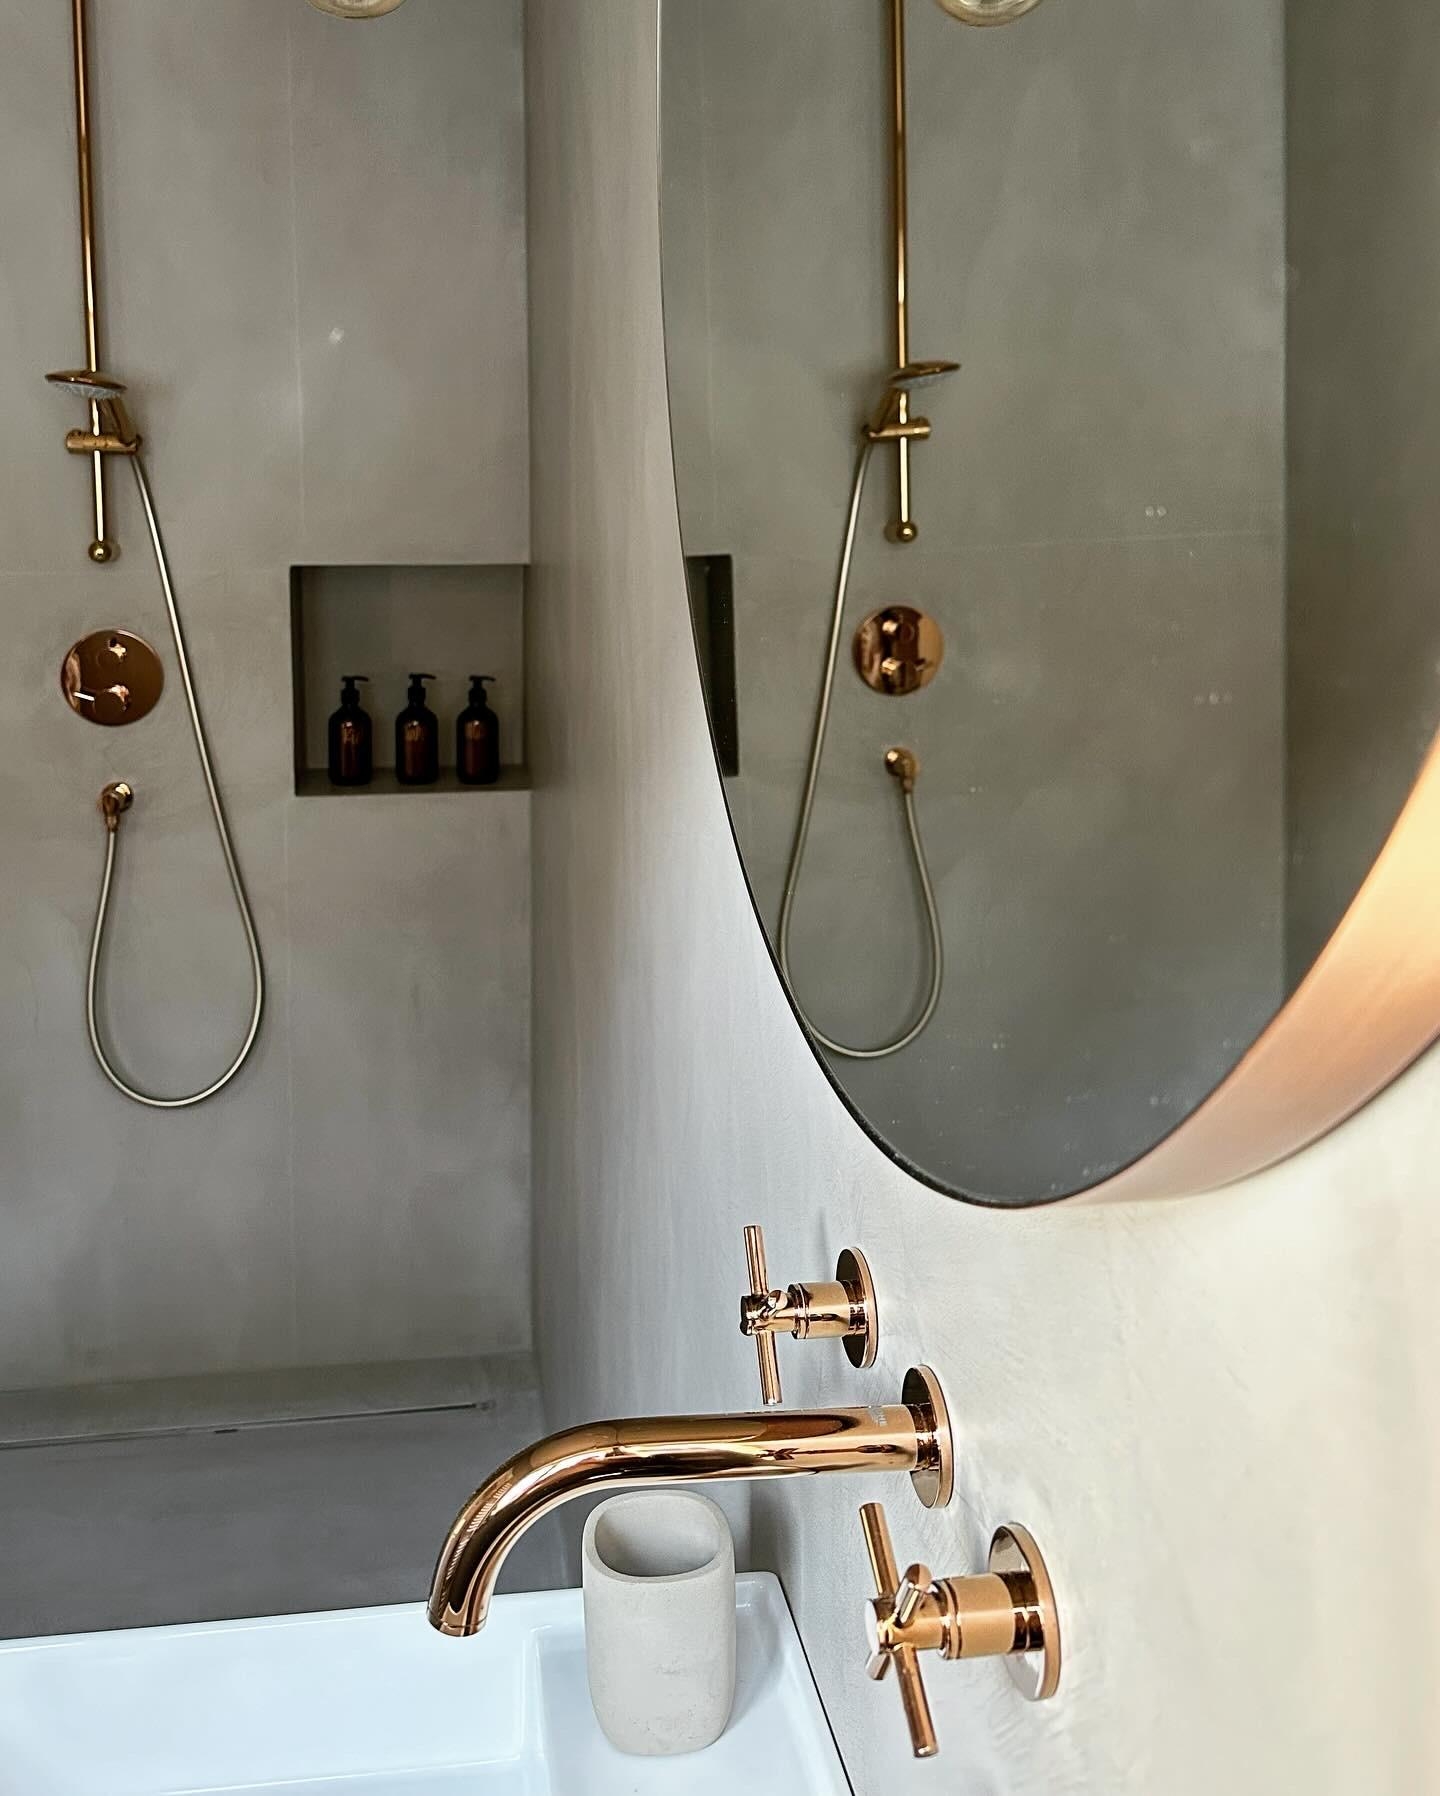 Unser fugenloser #duschraum mit kupferfarbenen Armaturen 🤎

#badezimmerinspo 